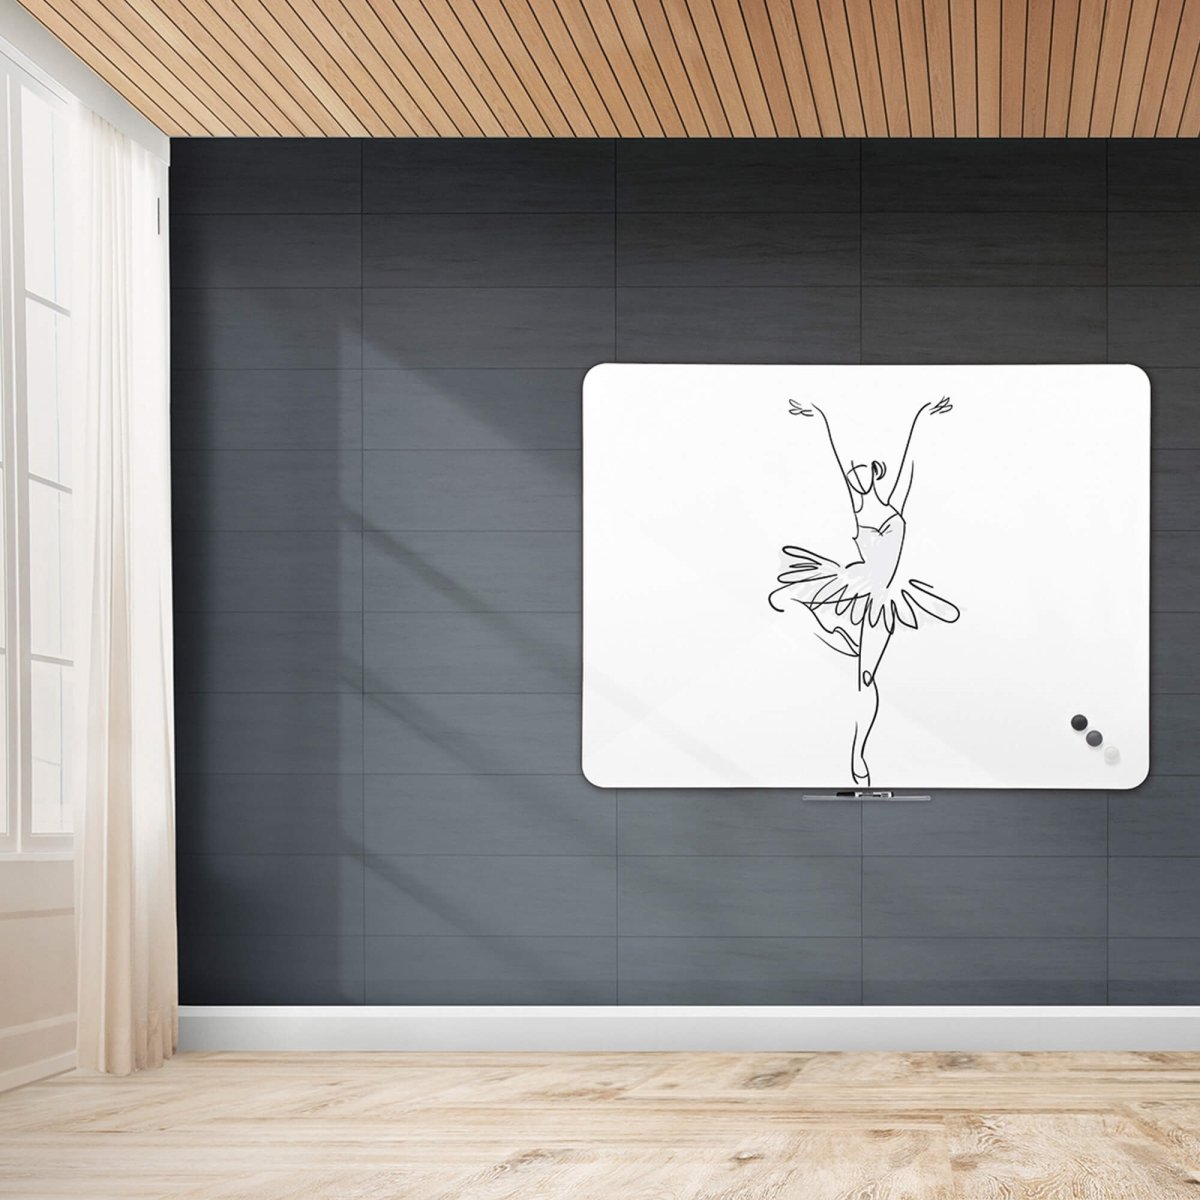 Naga magnetisk whiteboard uden ramme, 117x87 cm